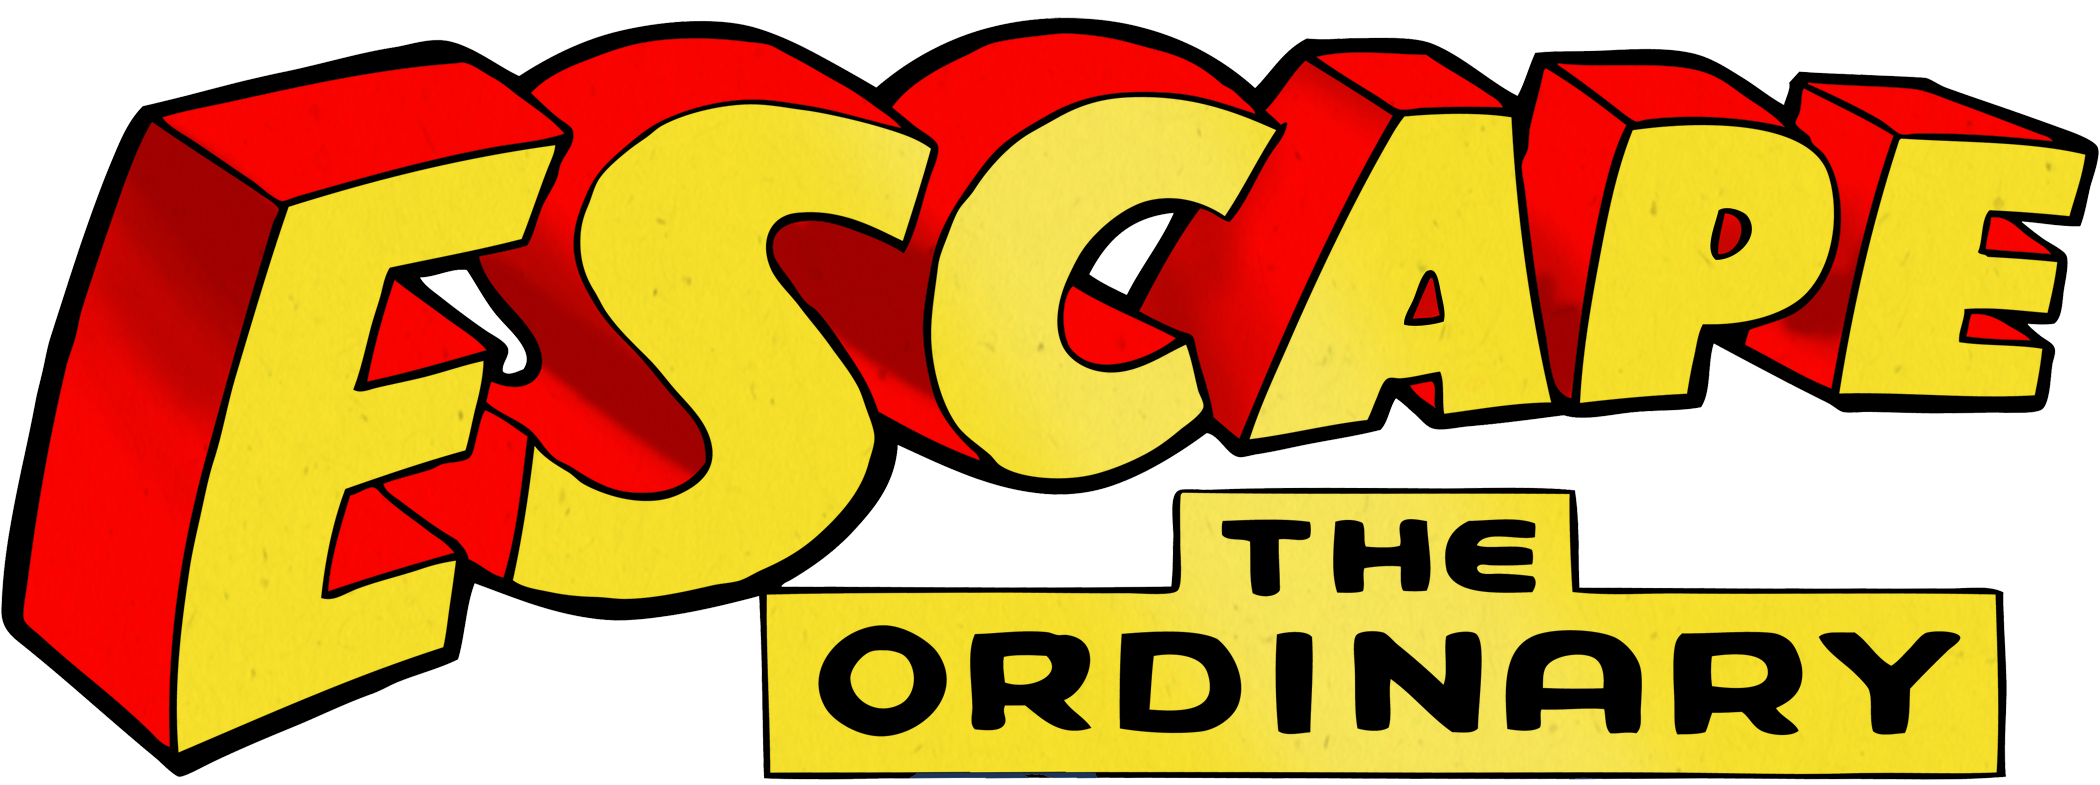 Escape the Ordinary Logo